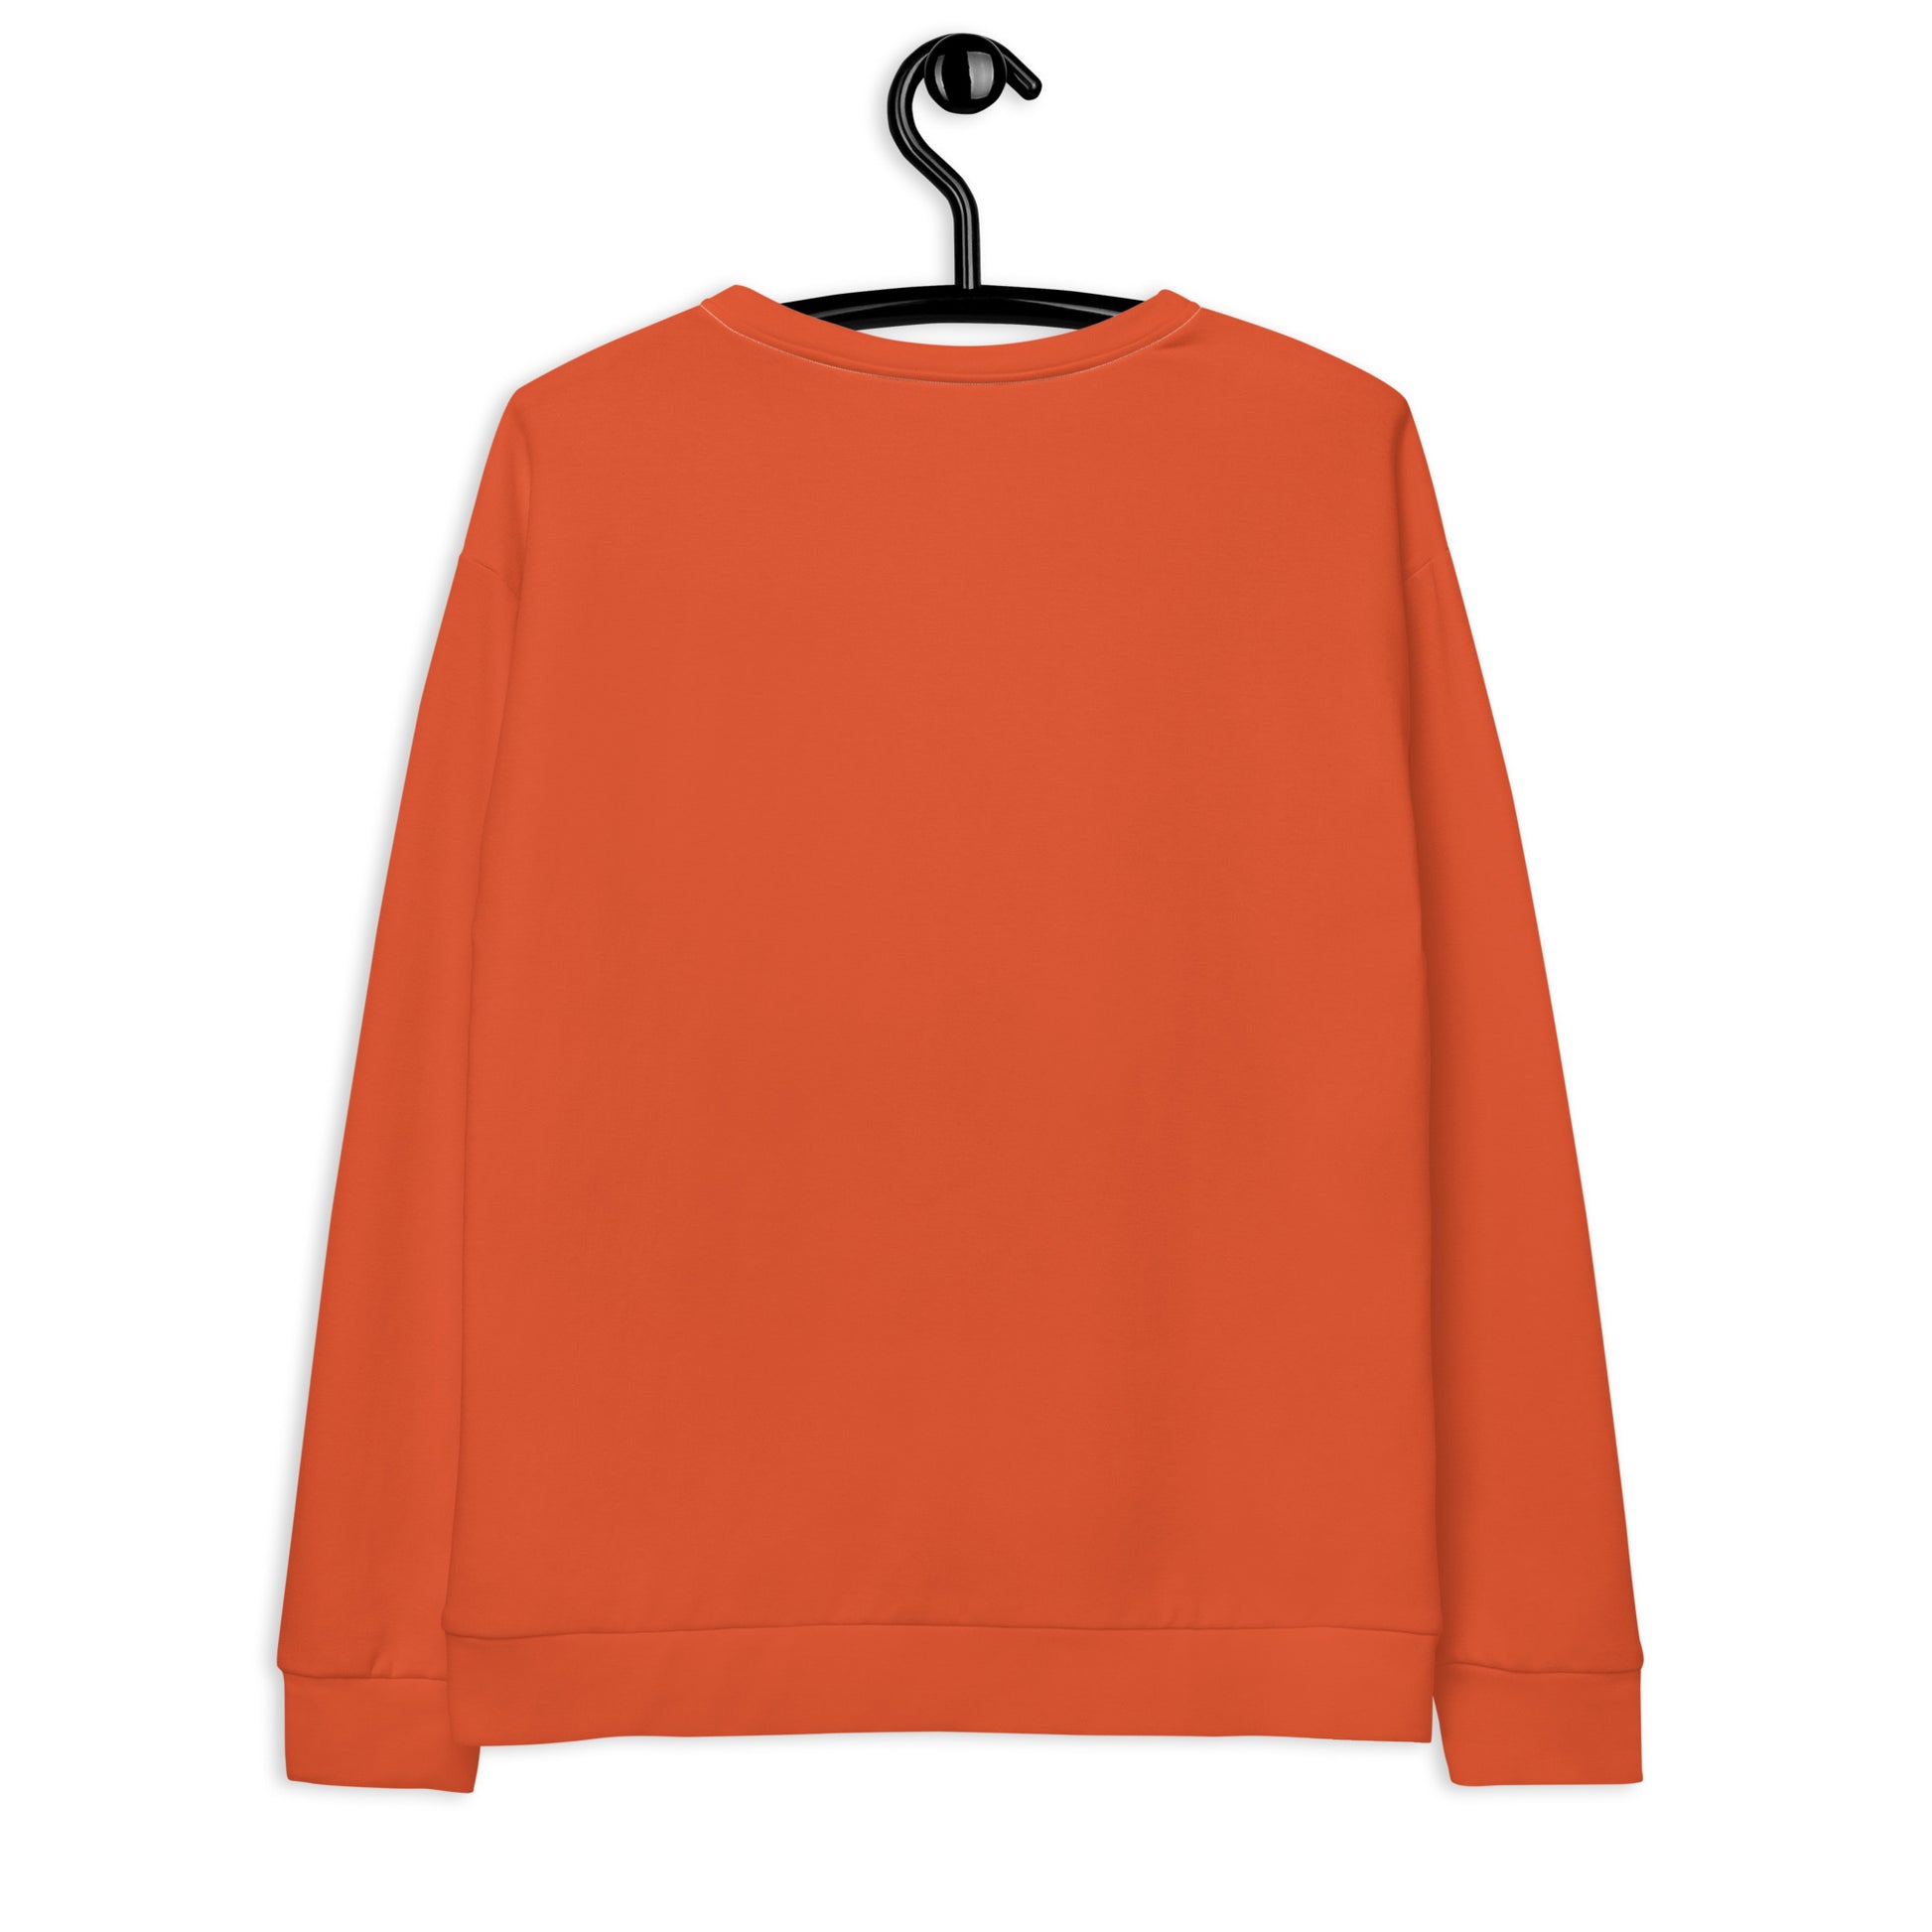 The Netherlands Clothing / Flag Sweater / Orange Sweater / The Netherlands Flag Print